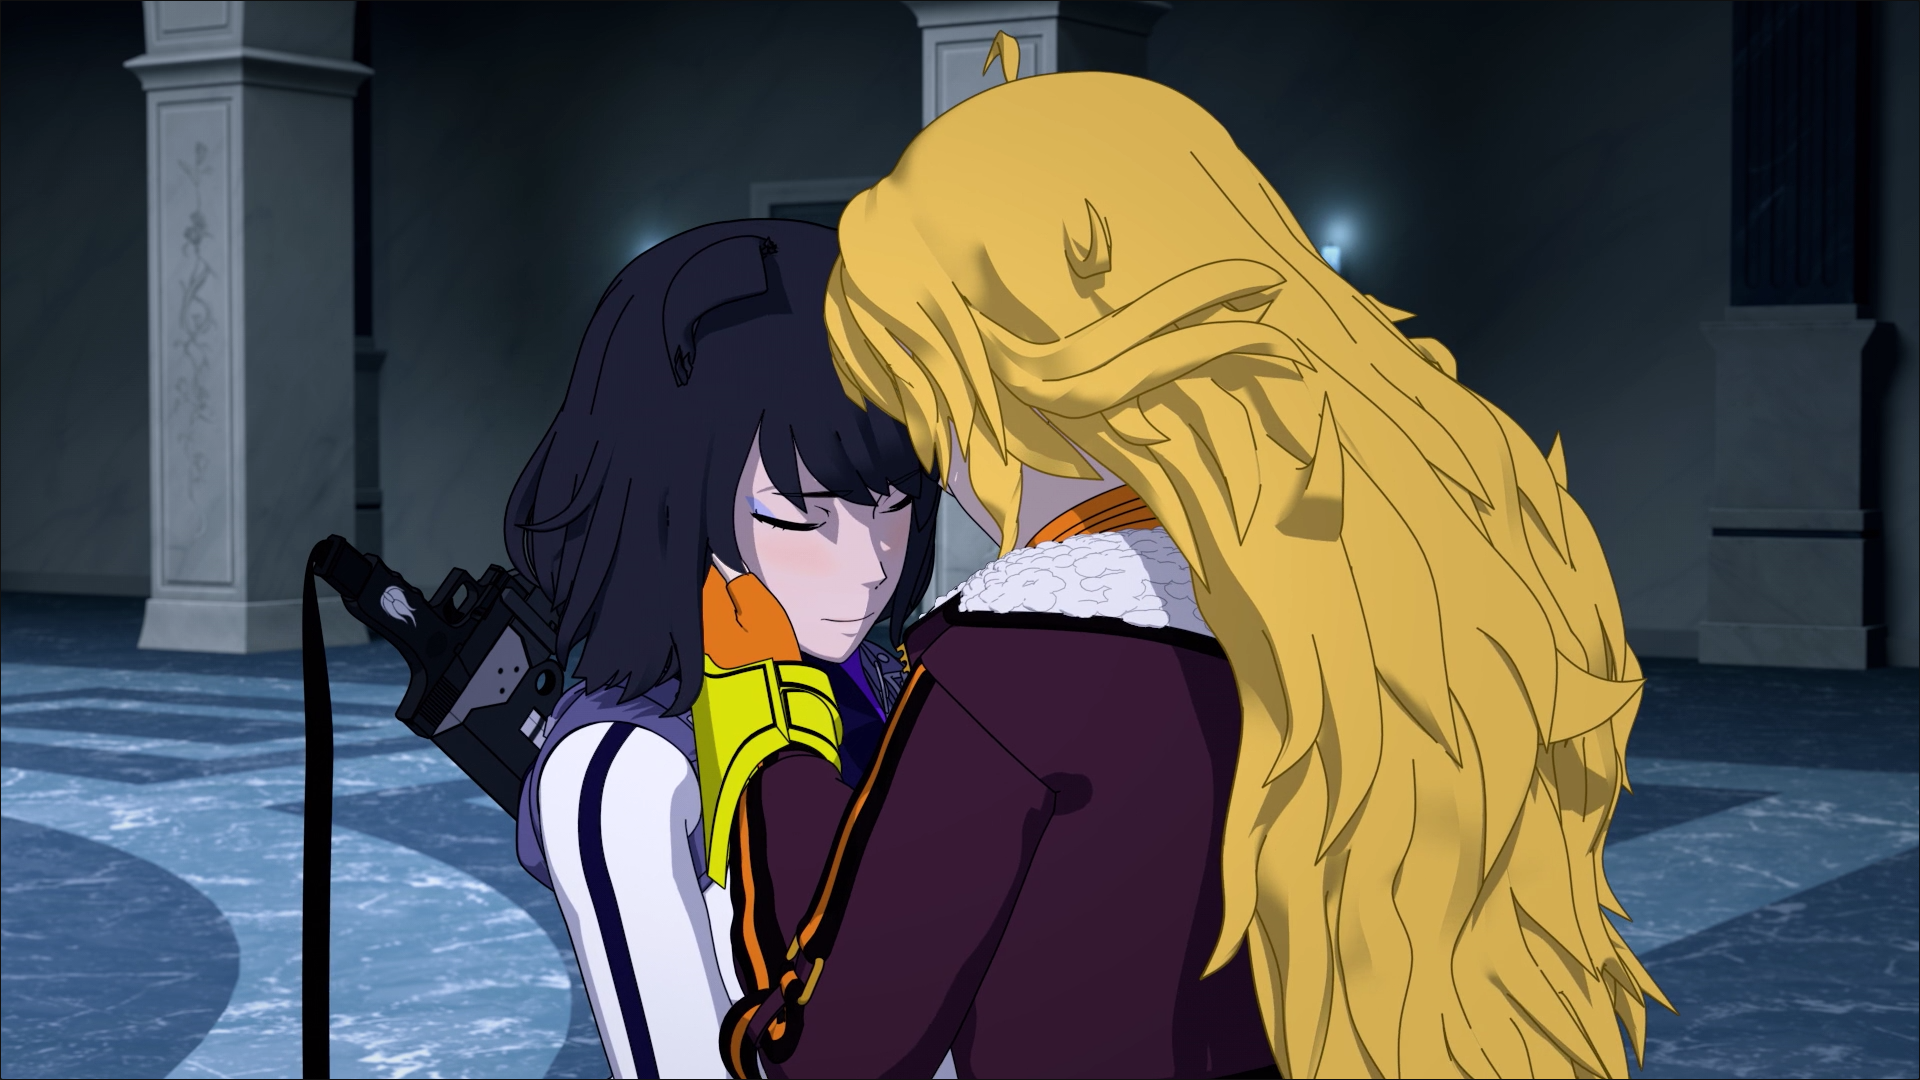 rwby volume 6 episode 1 kiss anime